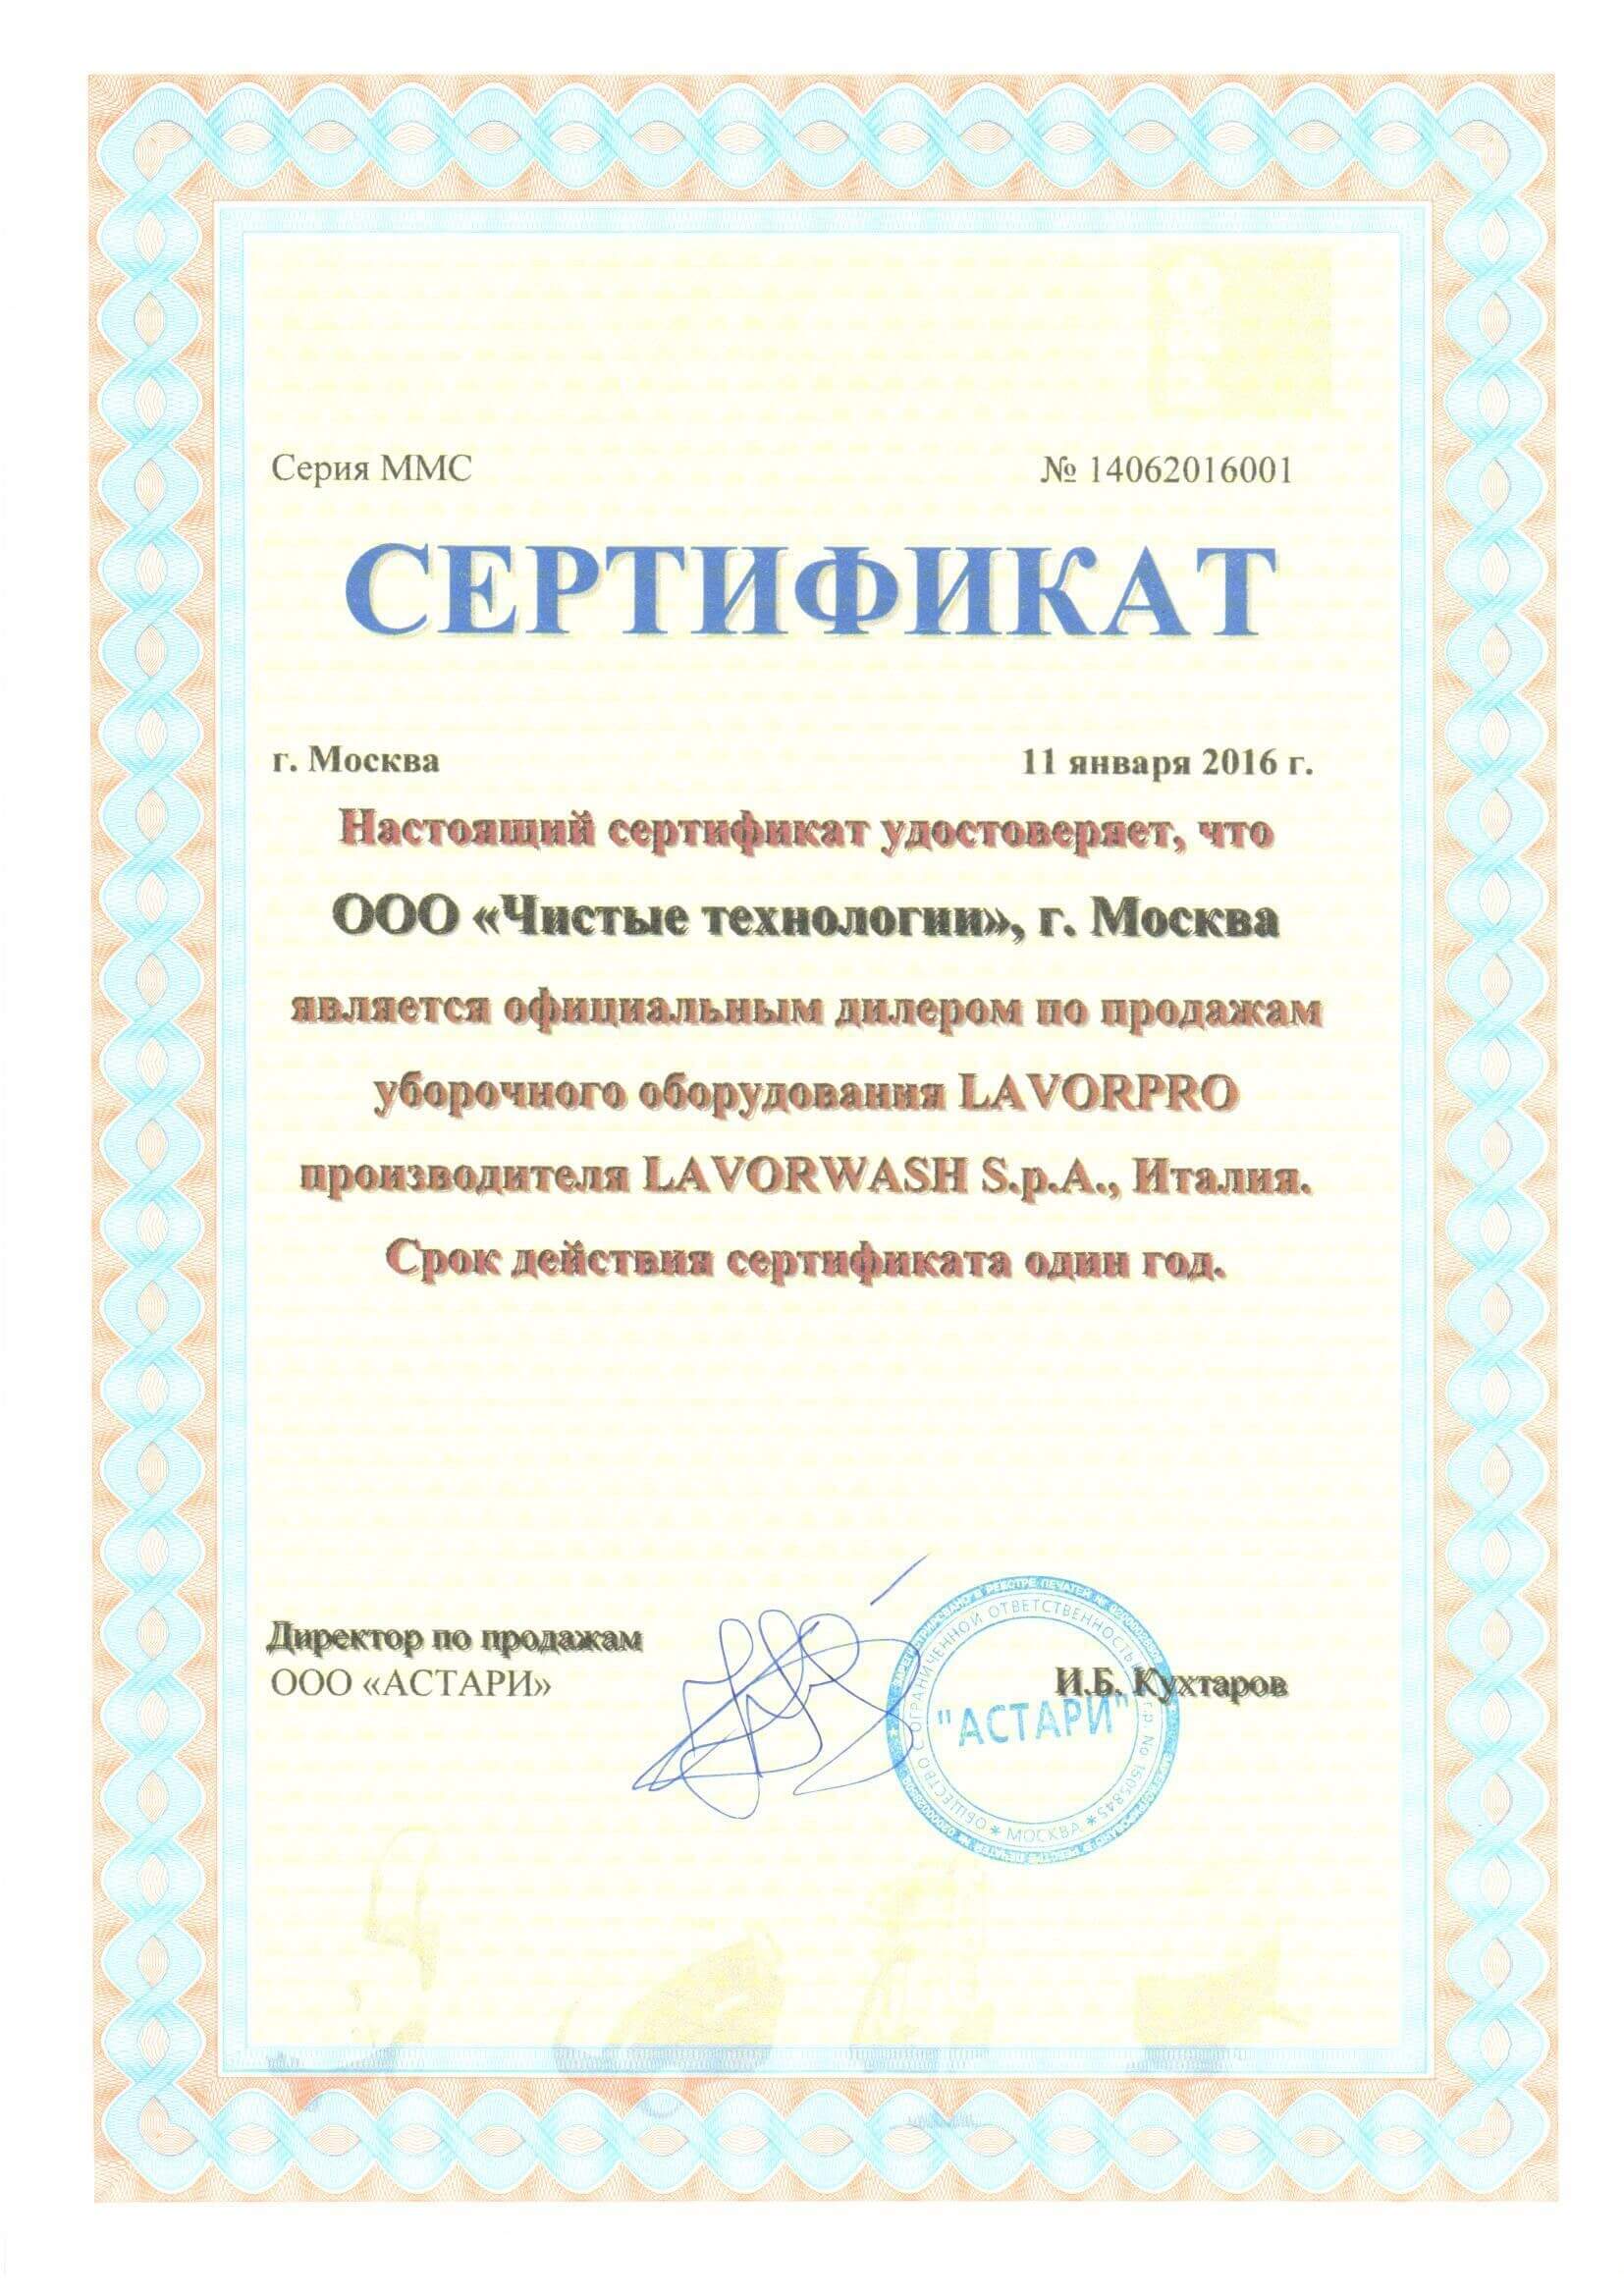 Лицензии и сертификаты № 5